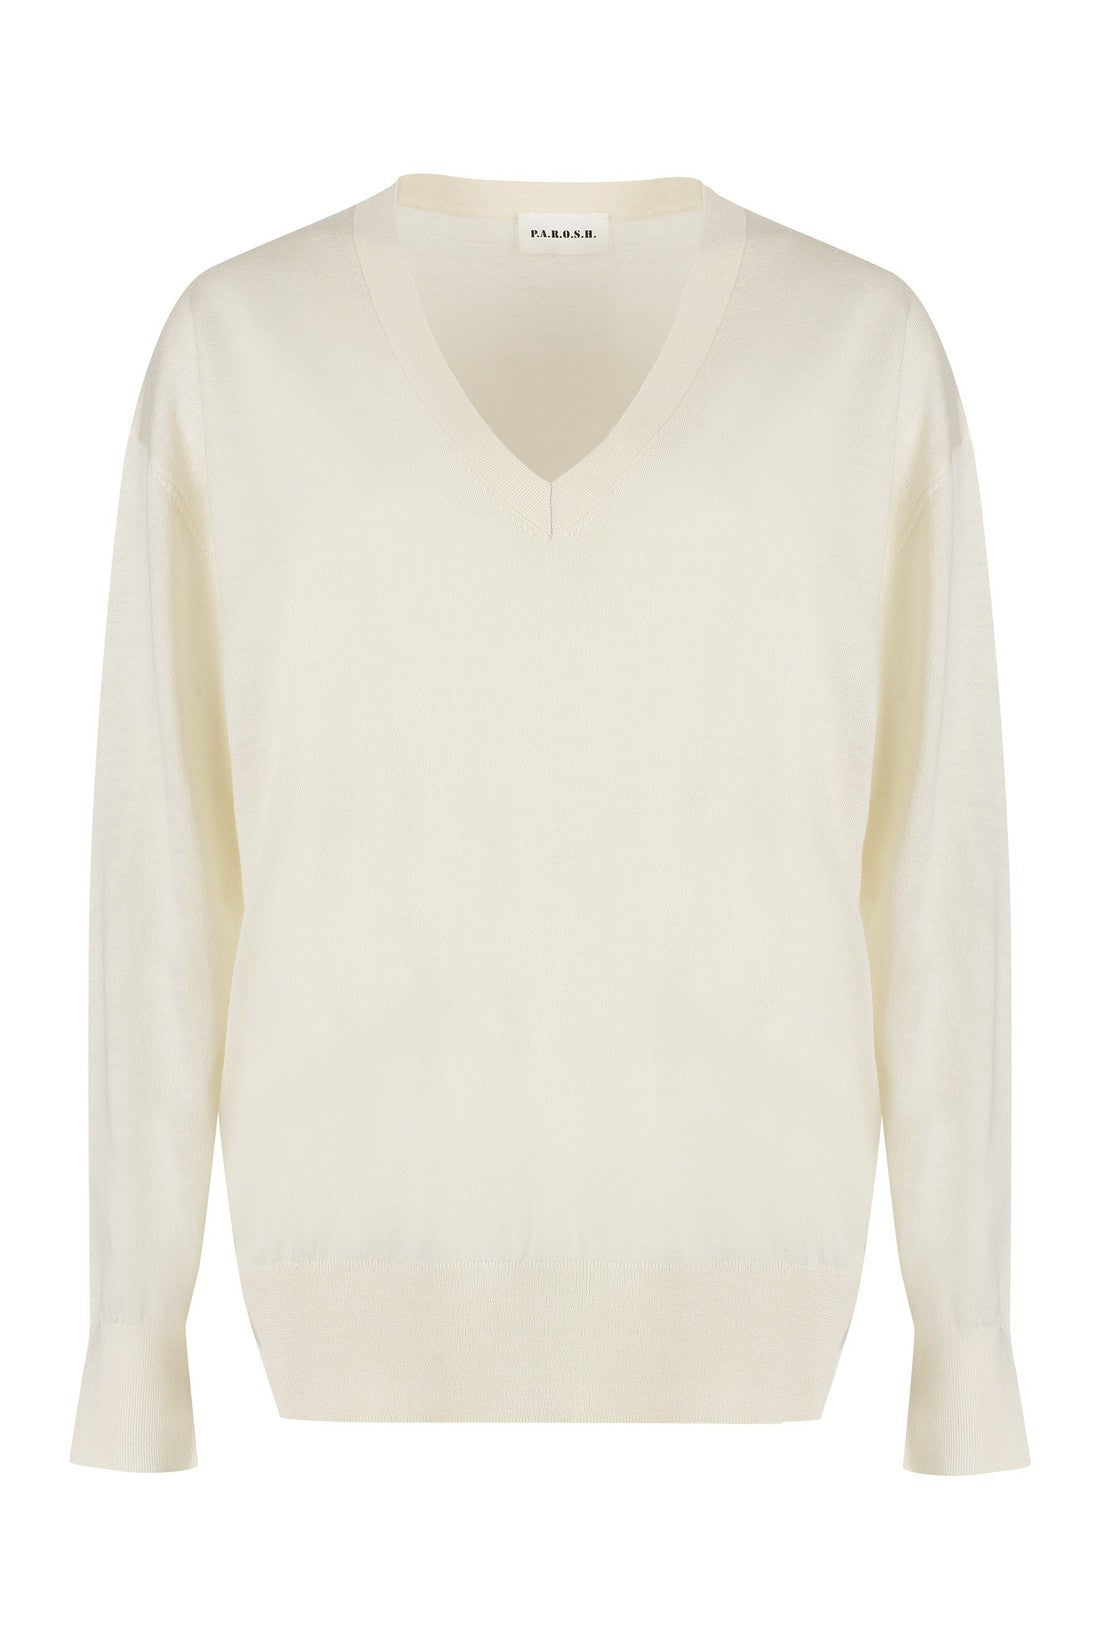 Parosh-OUTLET-SALE-Cashmere sweater-ARCHIVIST